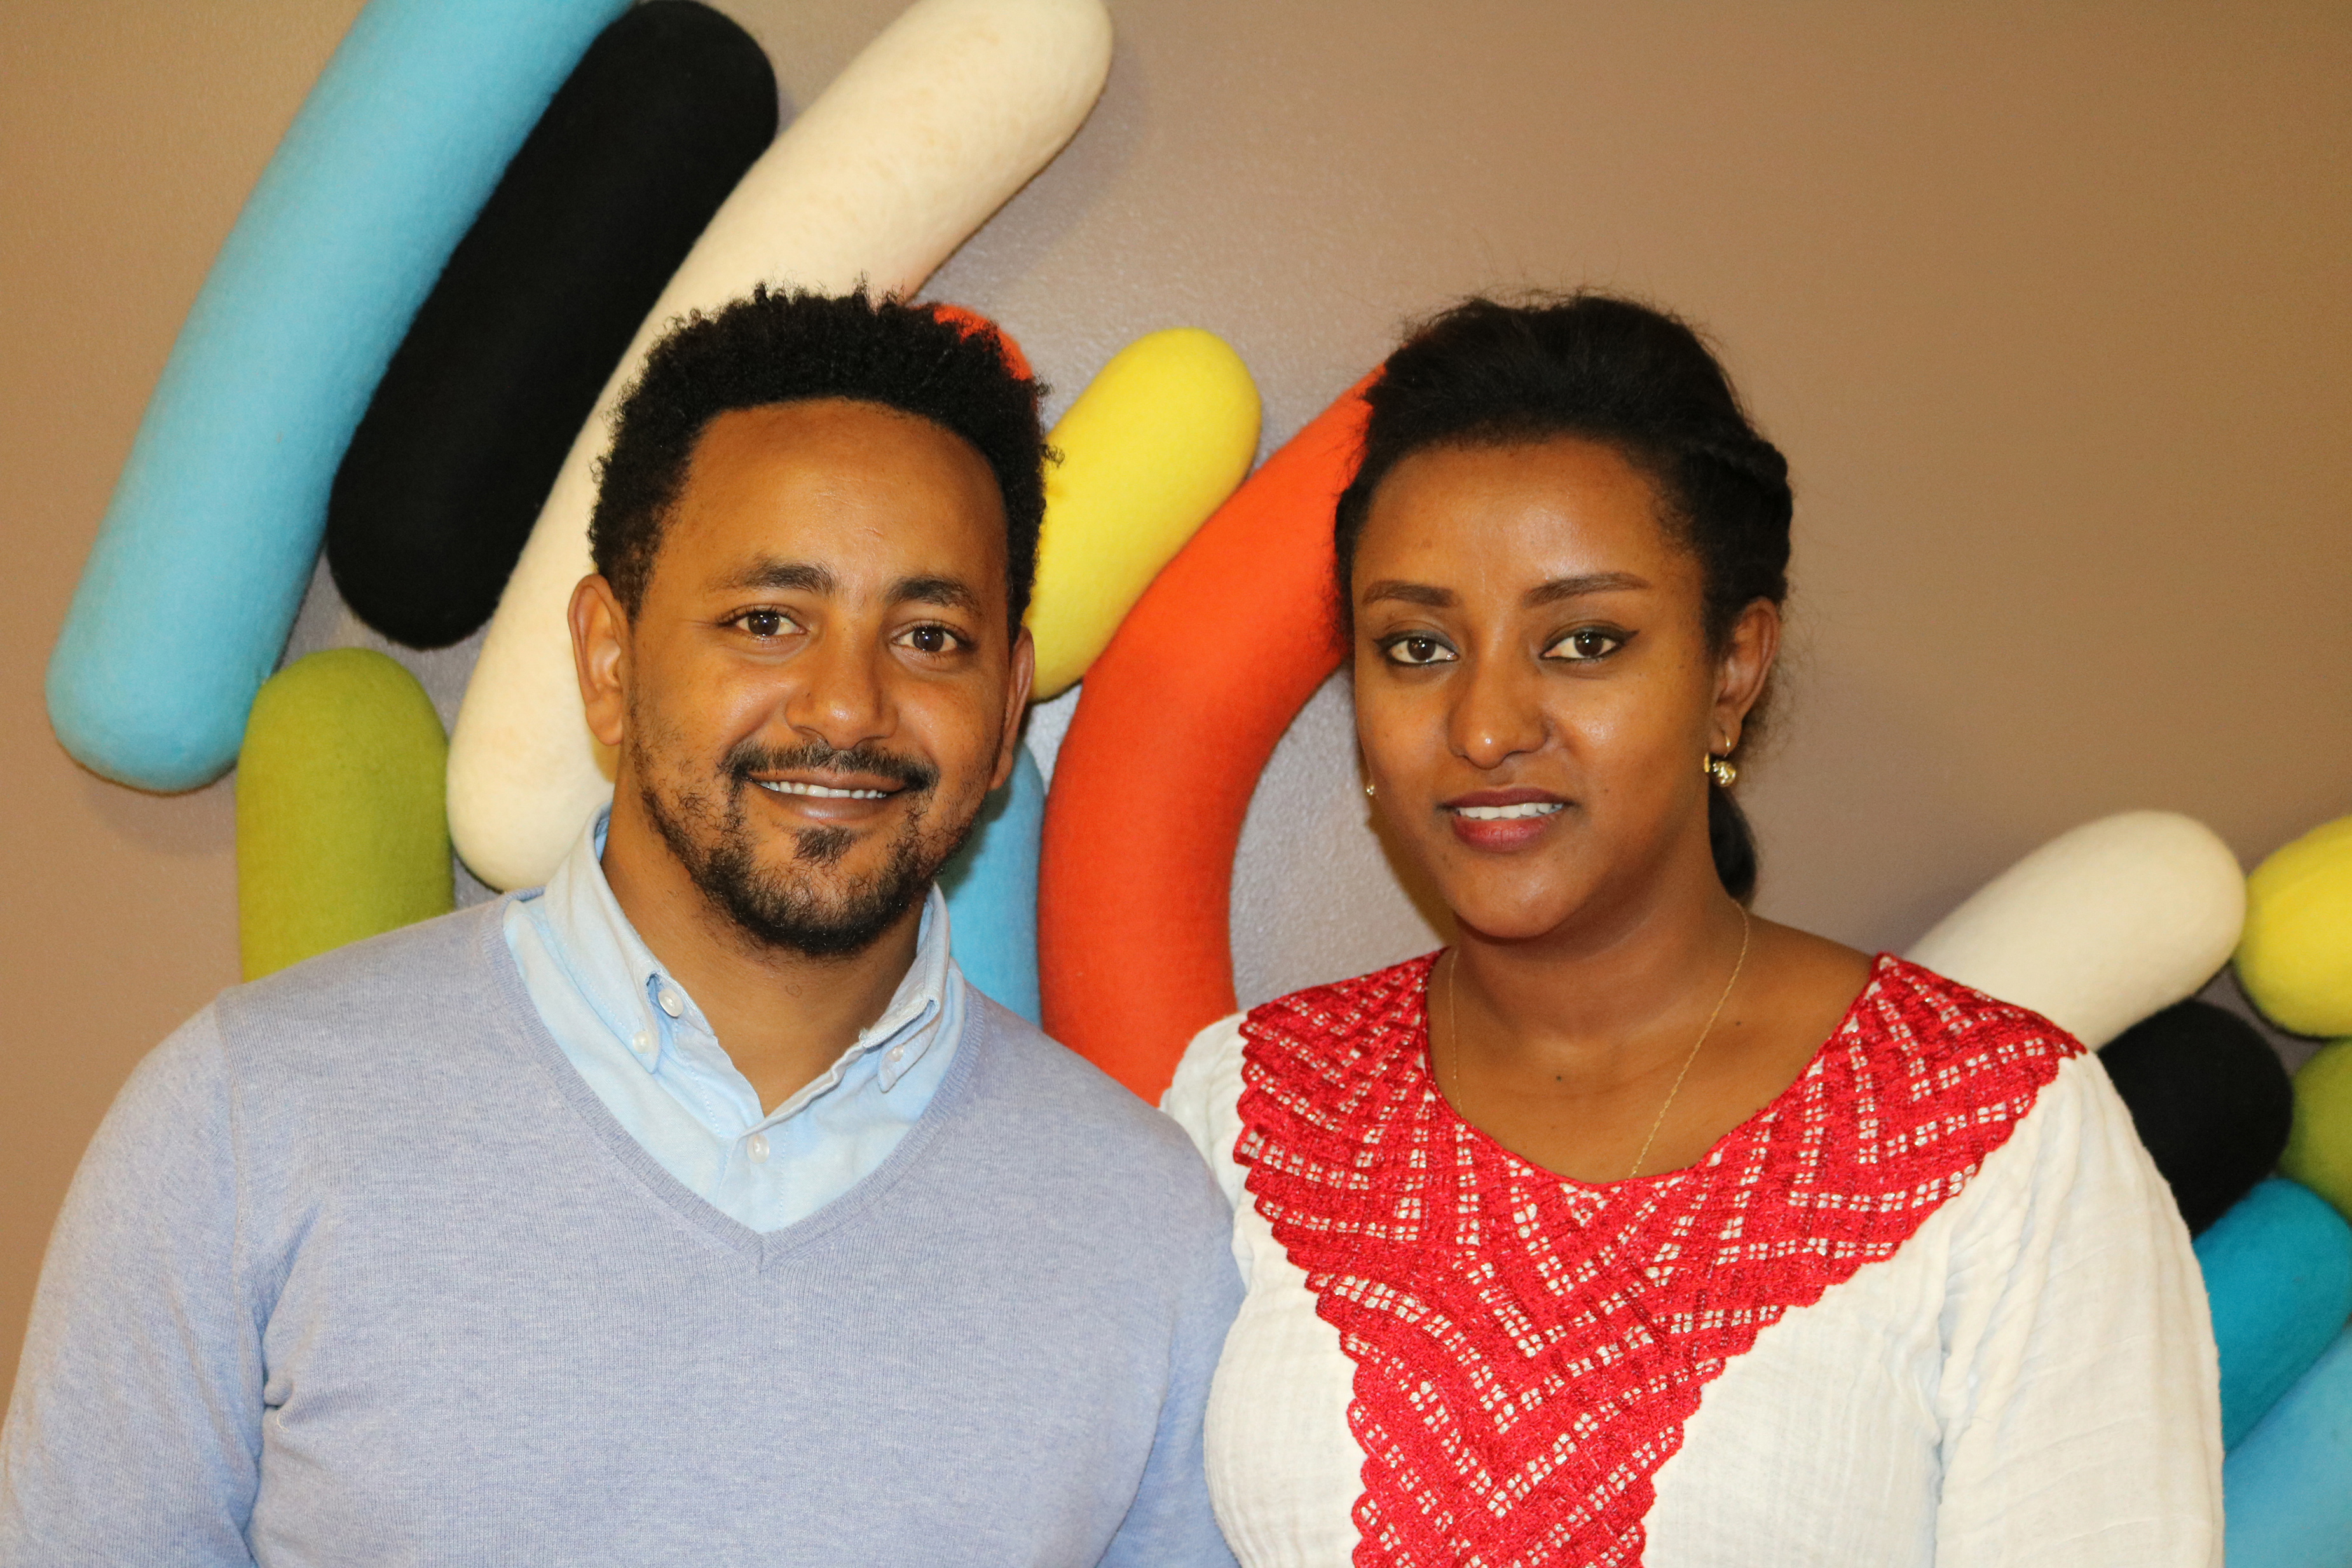 Suomen Lähetysseuran Etiopian projektivastaava Tesfaye Nigusu vaimonsa Nehaab Abaynehin kanssa